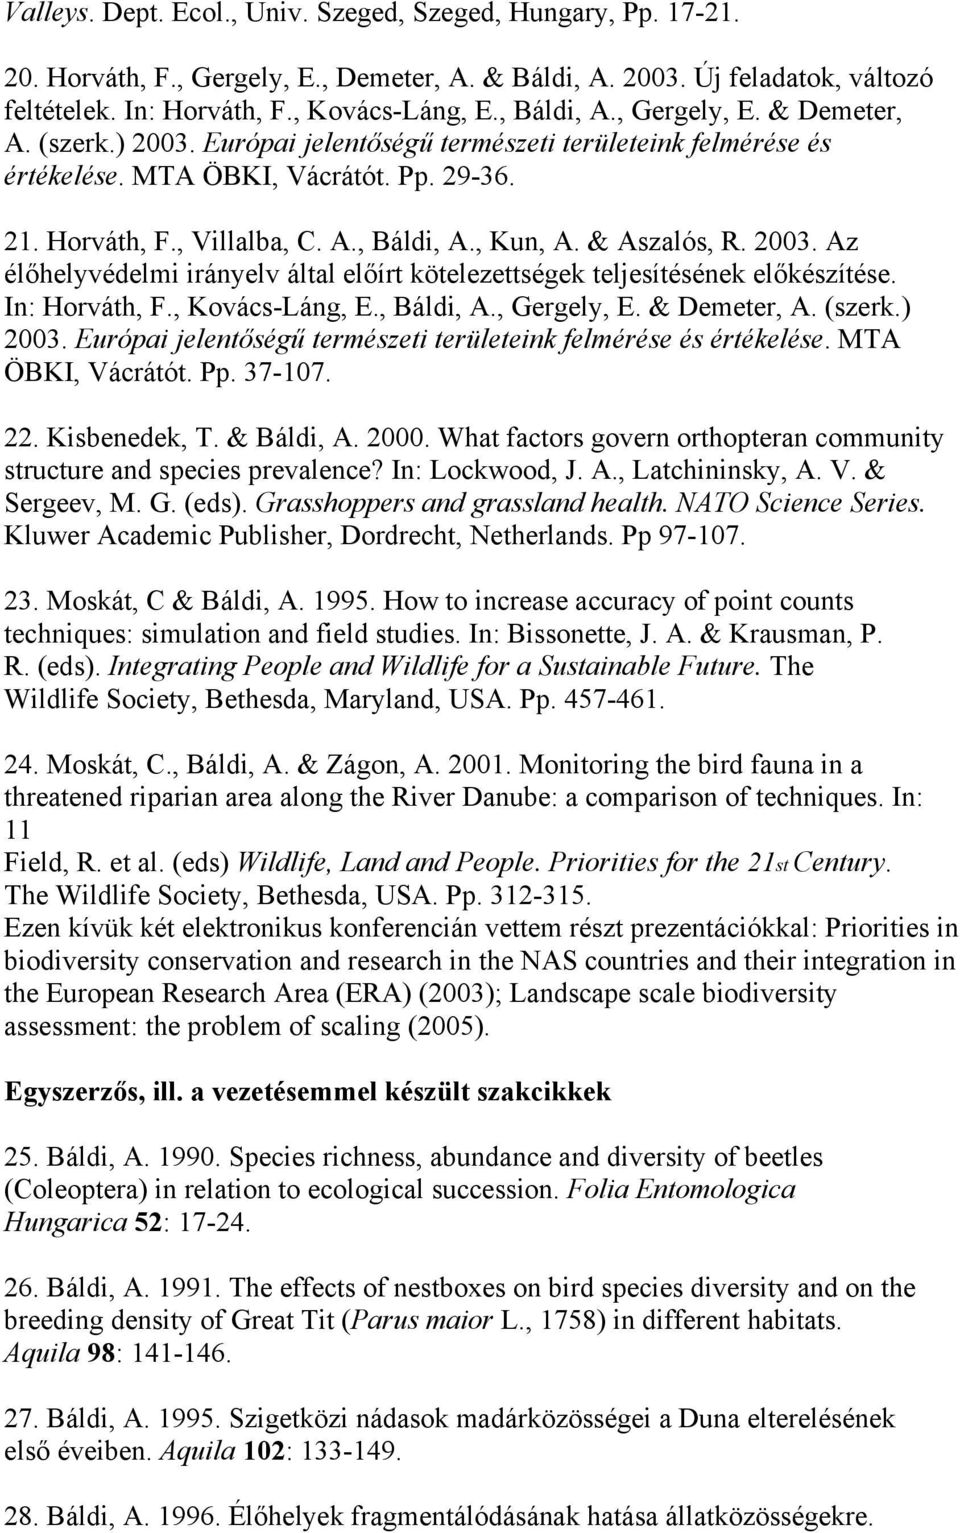 & Aszalós, R. 2003. Az élőhelyvédelmi irányelv által előírt kötelezettségek teljesítésének előkészítése. In: Horváth, F., Kovács-Láng, E., Báldi, A., Gergely, E. & Demeter, A. (szerk.) 2003.